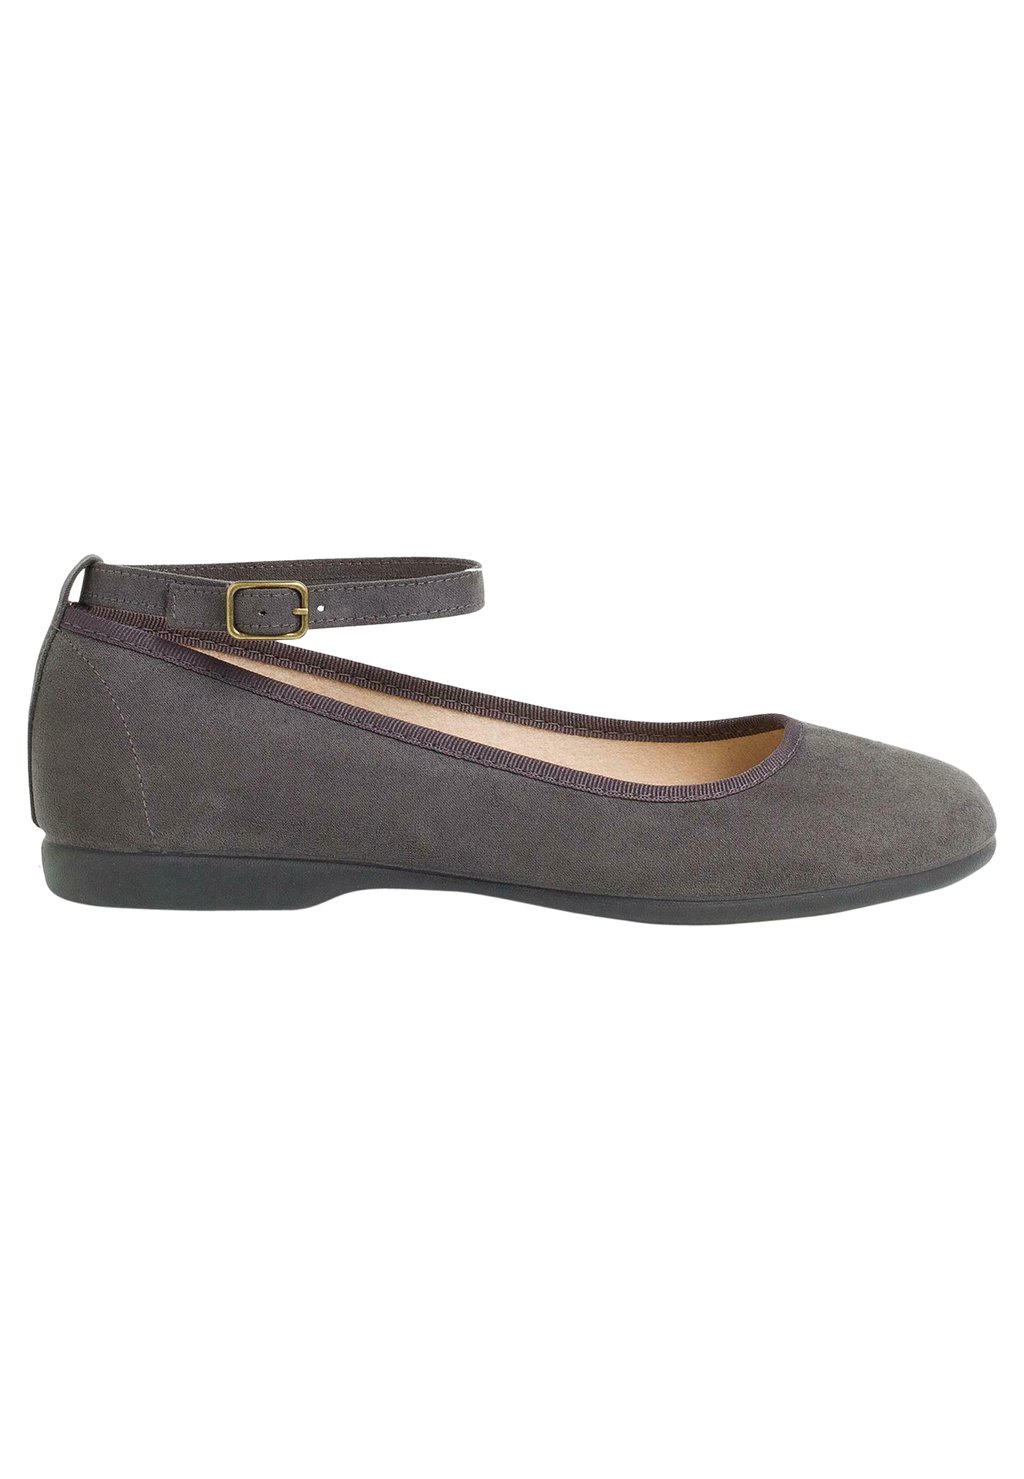 Балетки Pisamonas, цвет gris oscuro спортивные туфли на шнуровке safari cordones pisamonas цвет gris oscuro